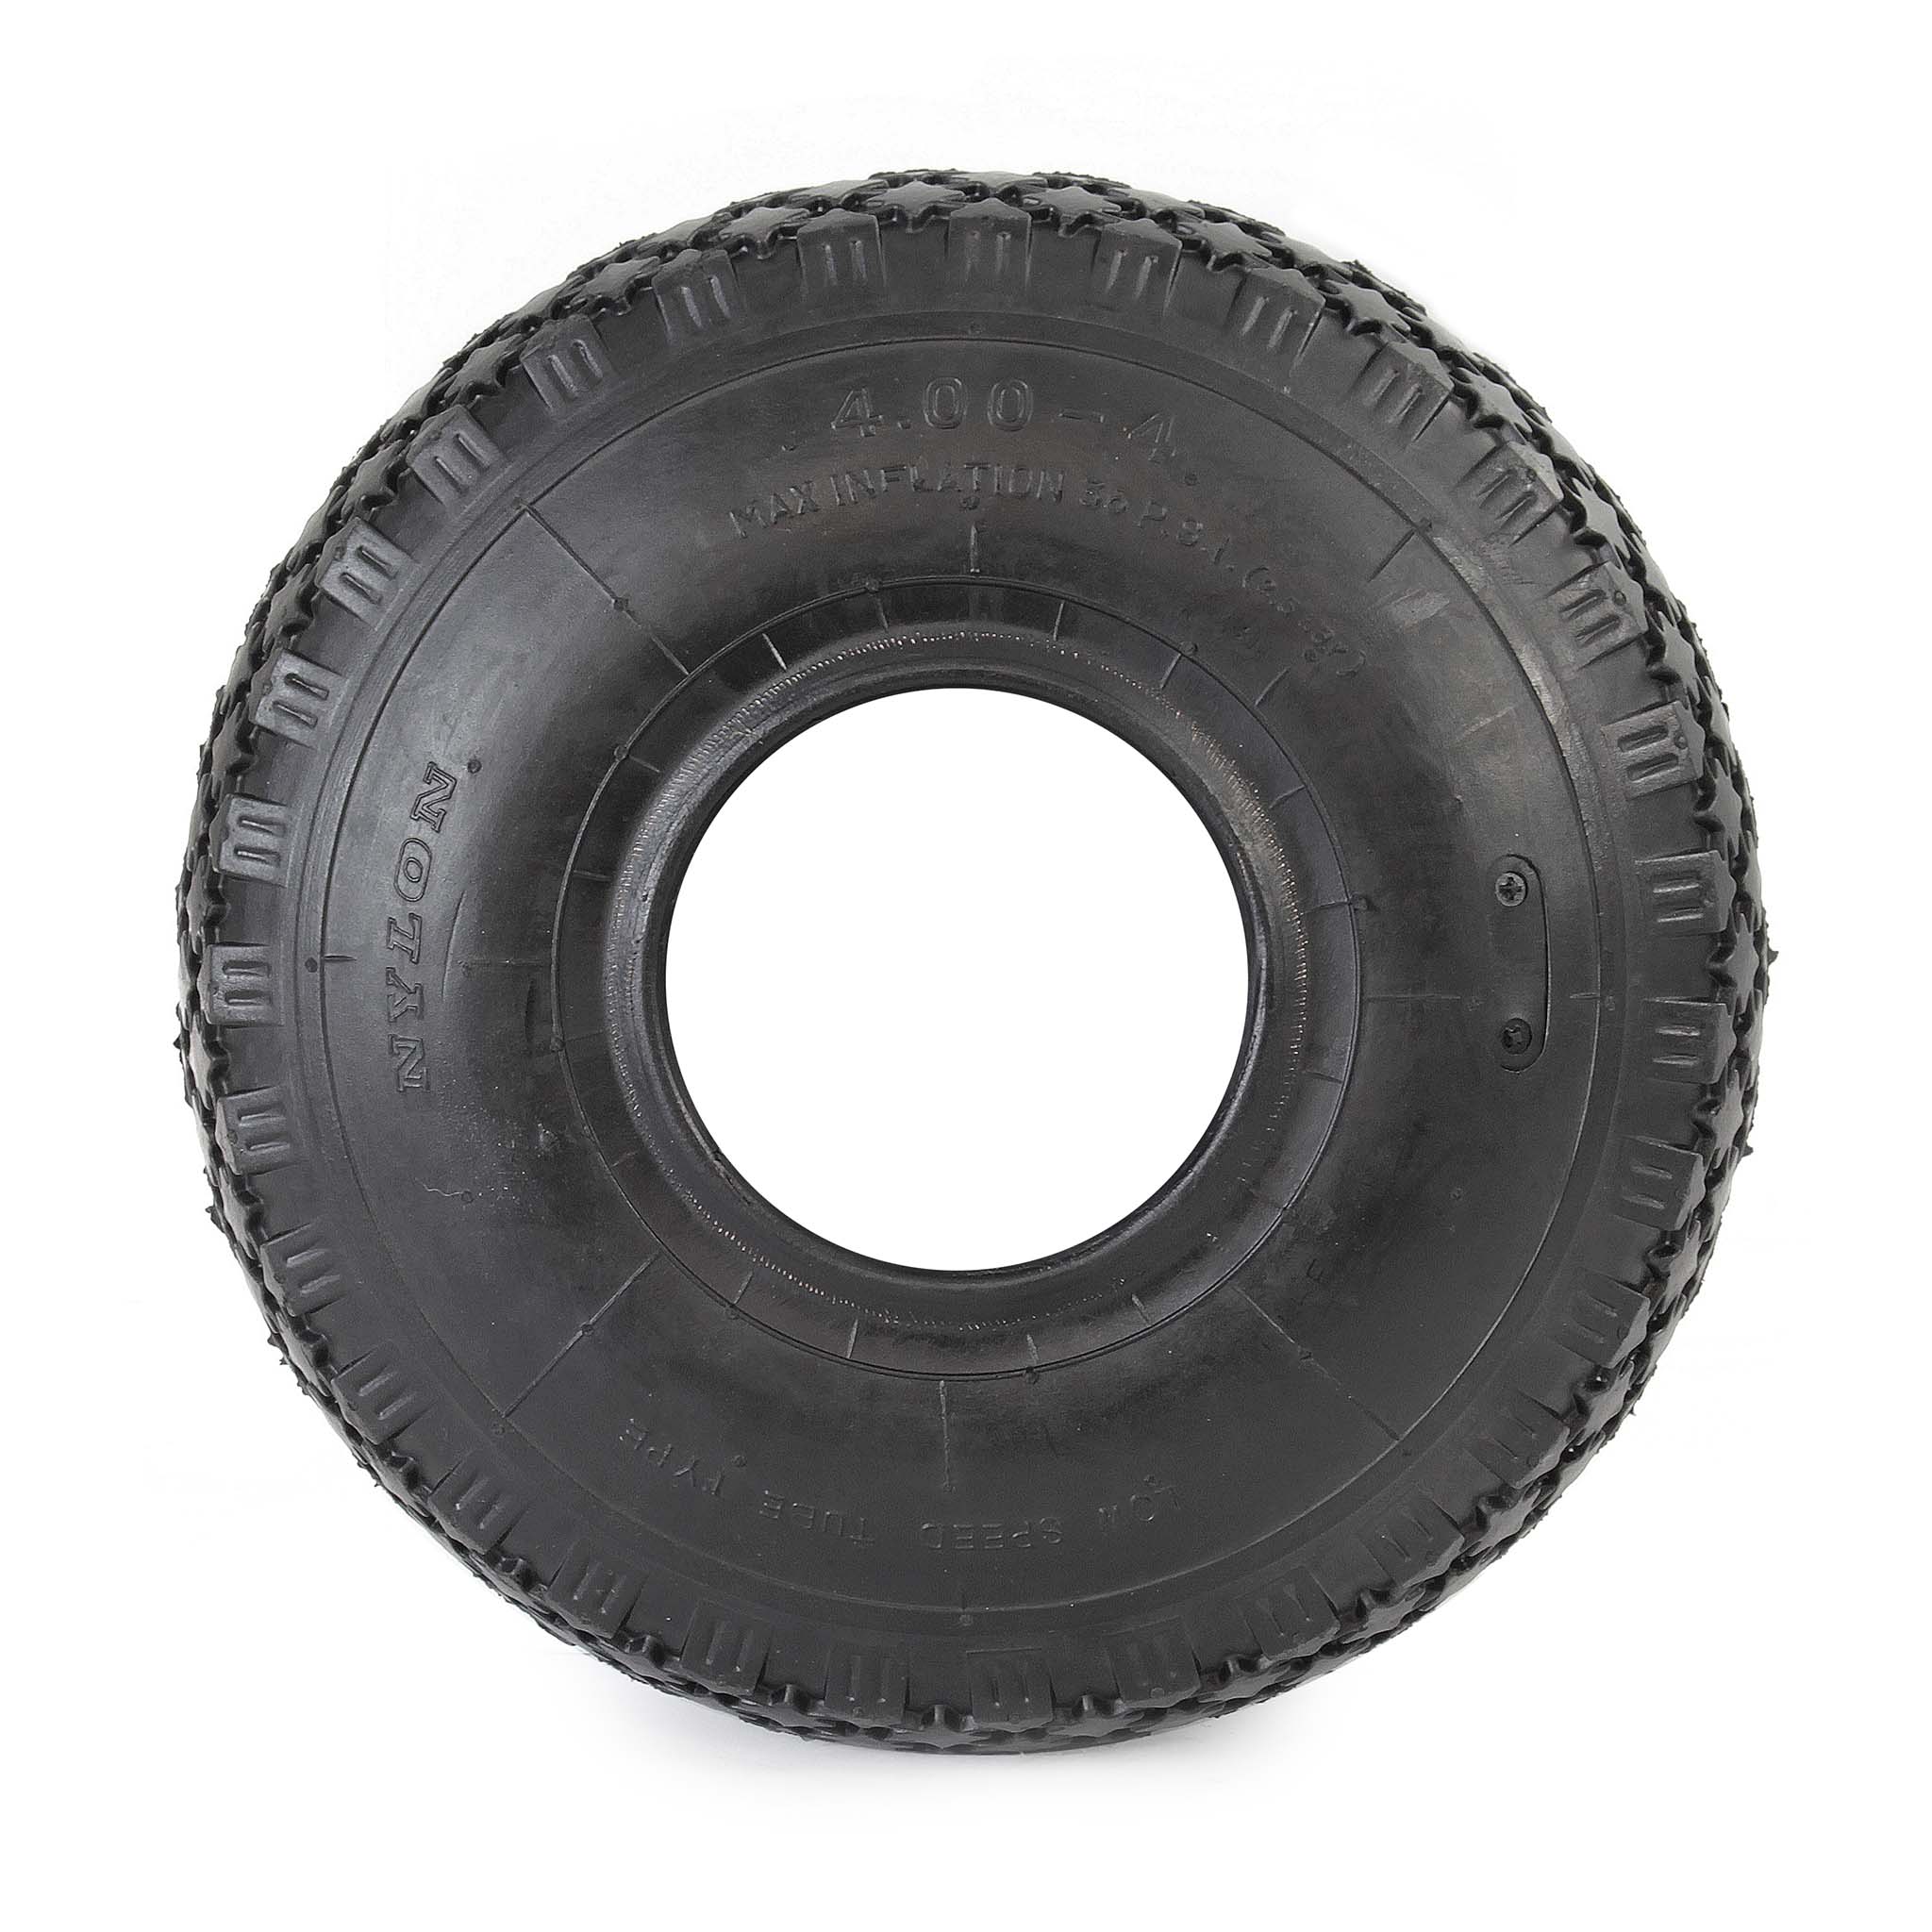 Chambre à air pour pneu de tracteur à pelouse 15x6.00-6 avec valve